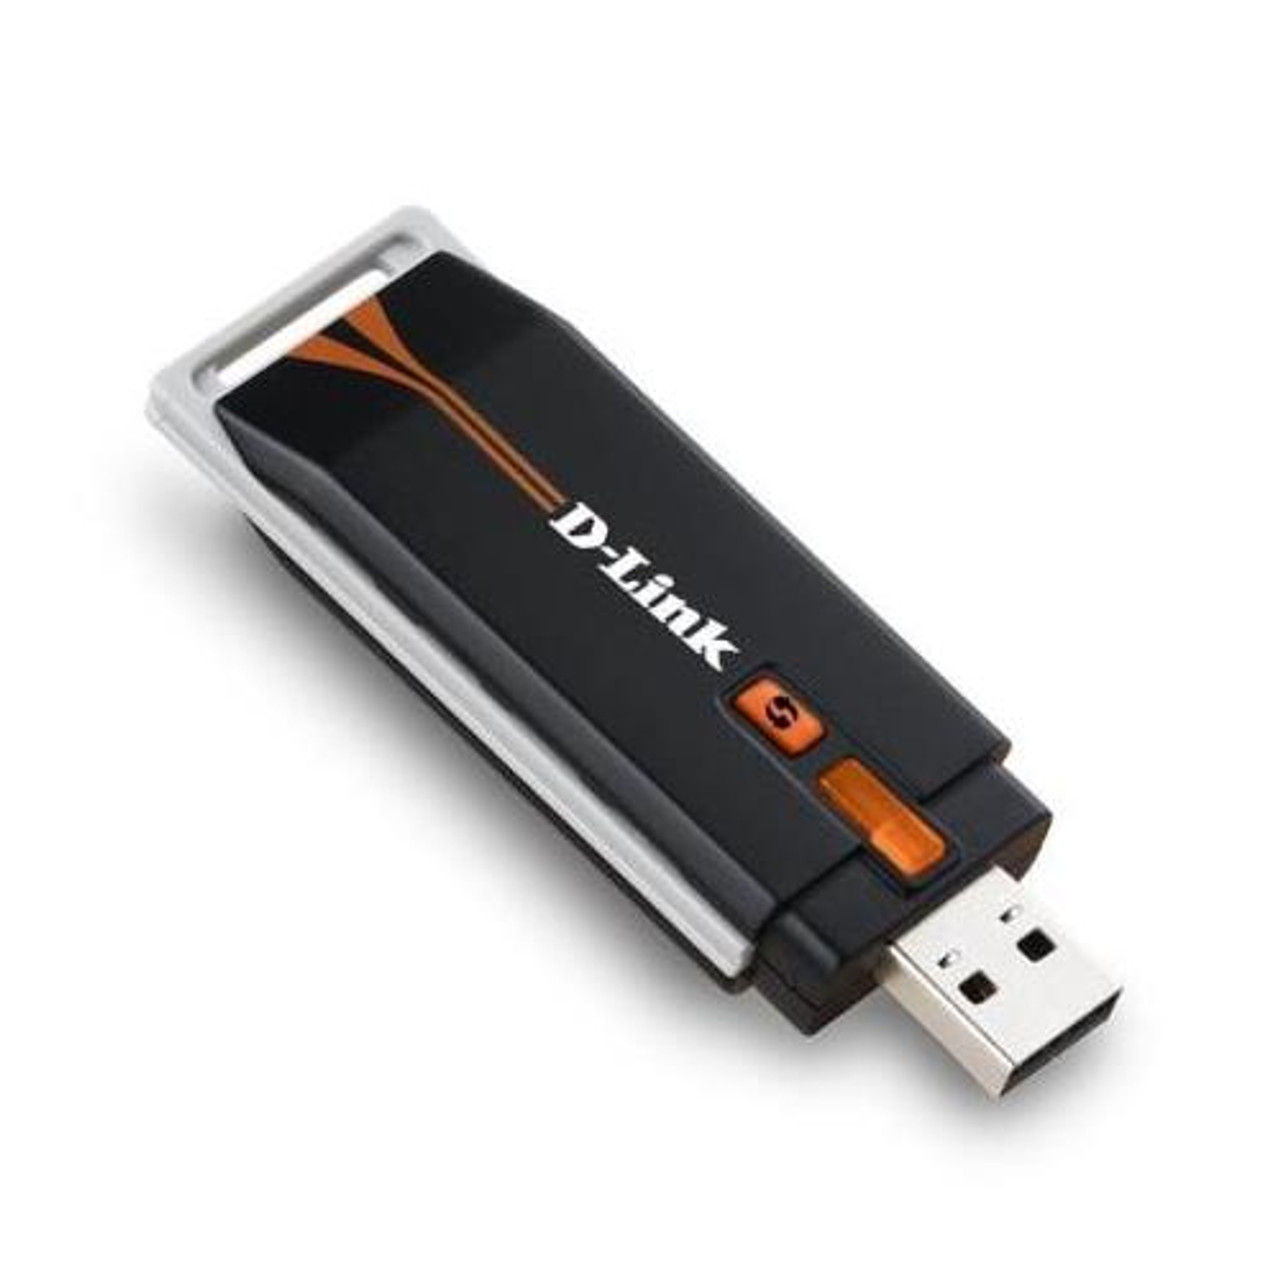 grad metan Definere DWA-125 D-Link Wireless USB Adapter USB 150Mbps IEEE 802.11n (draft)  (Refurbished)